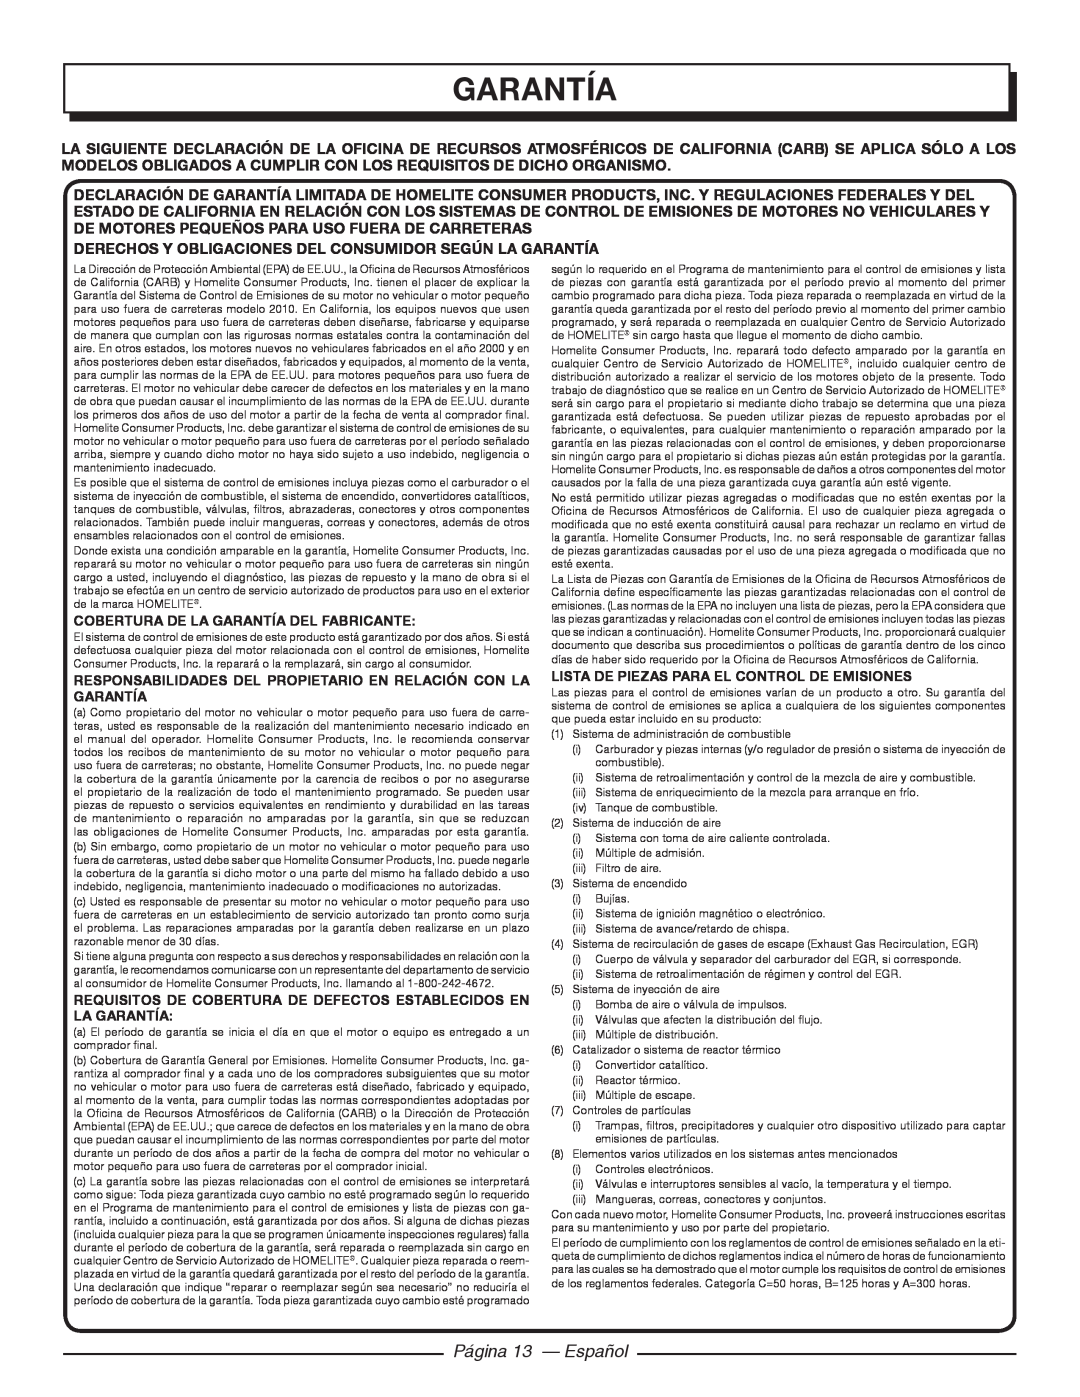 Homelite UT32600, UT32650 garantía, Página 13 - Español, Derechos Y Obligaciones Del Consumidor Según La Garantía 